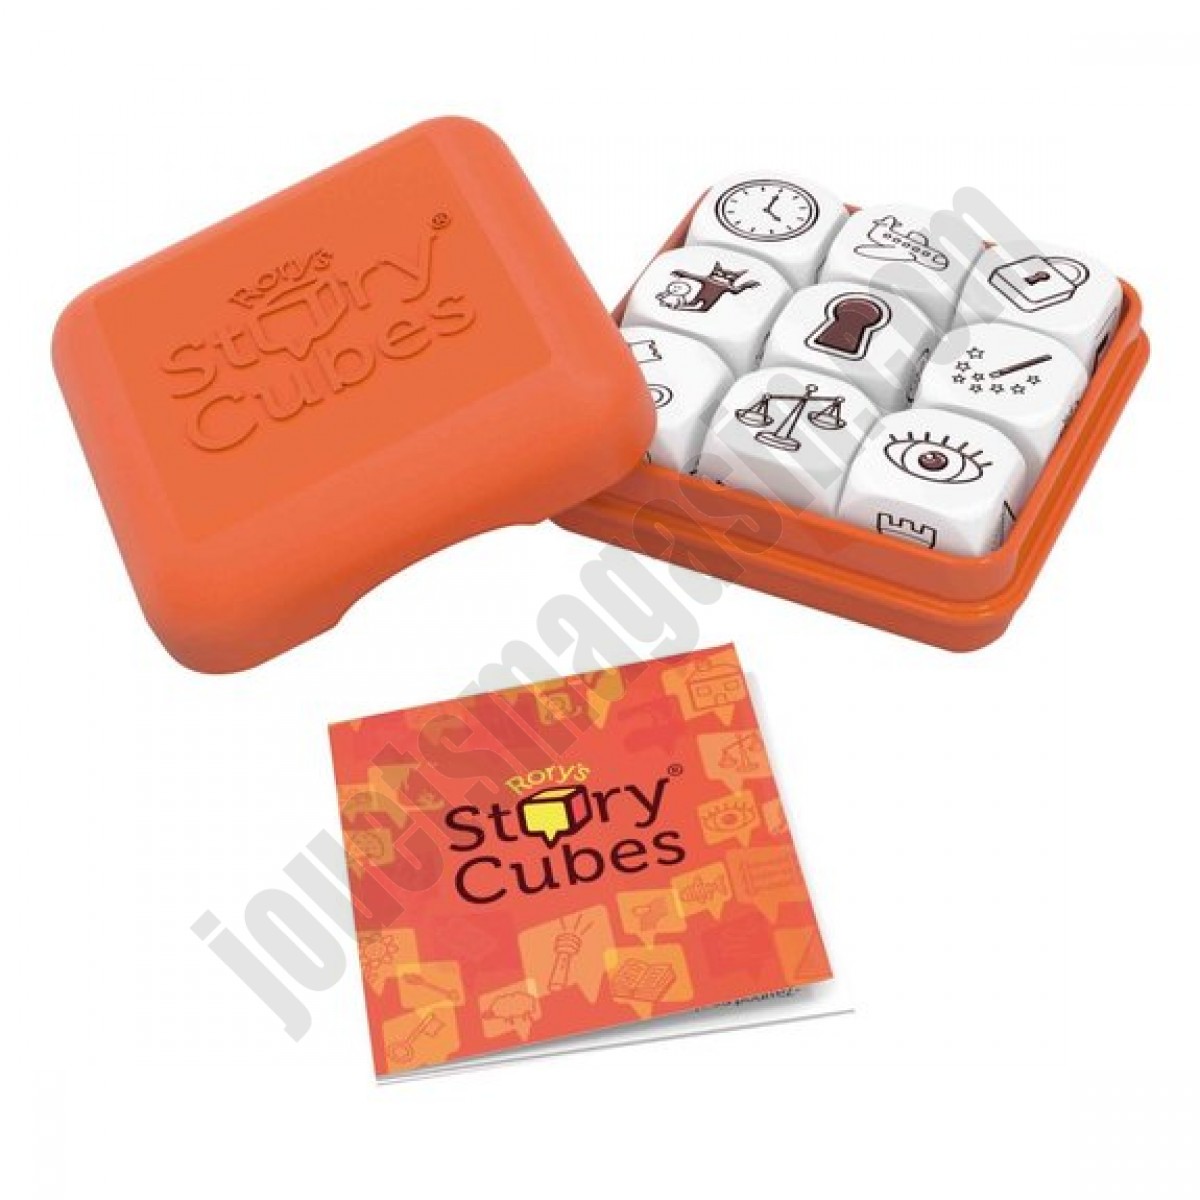 Story Cubes Starter Orange ◆◆◆ Nouveau - Story Cubes Starter Orange ◆◆◆ Nouveau